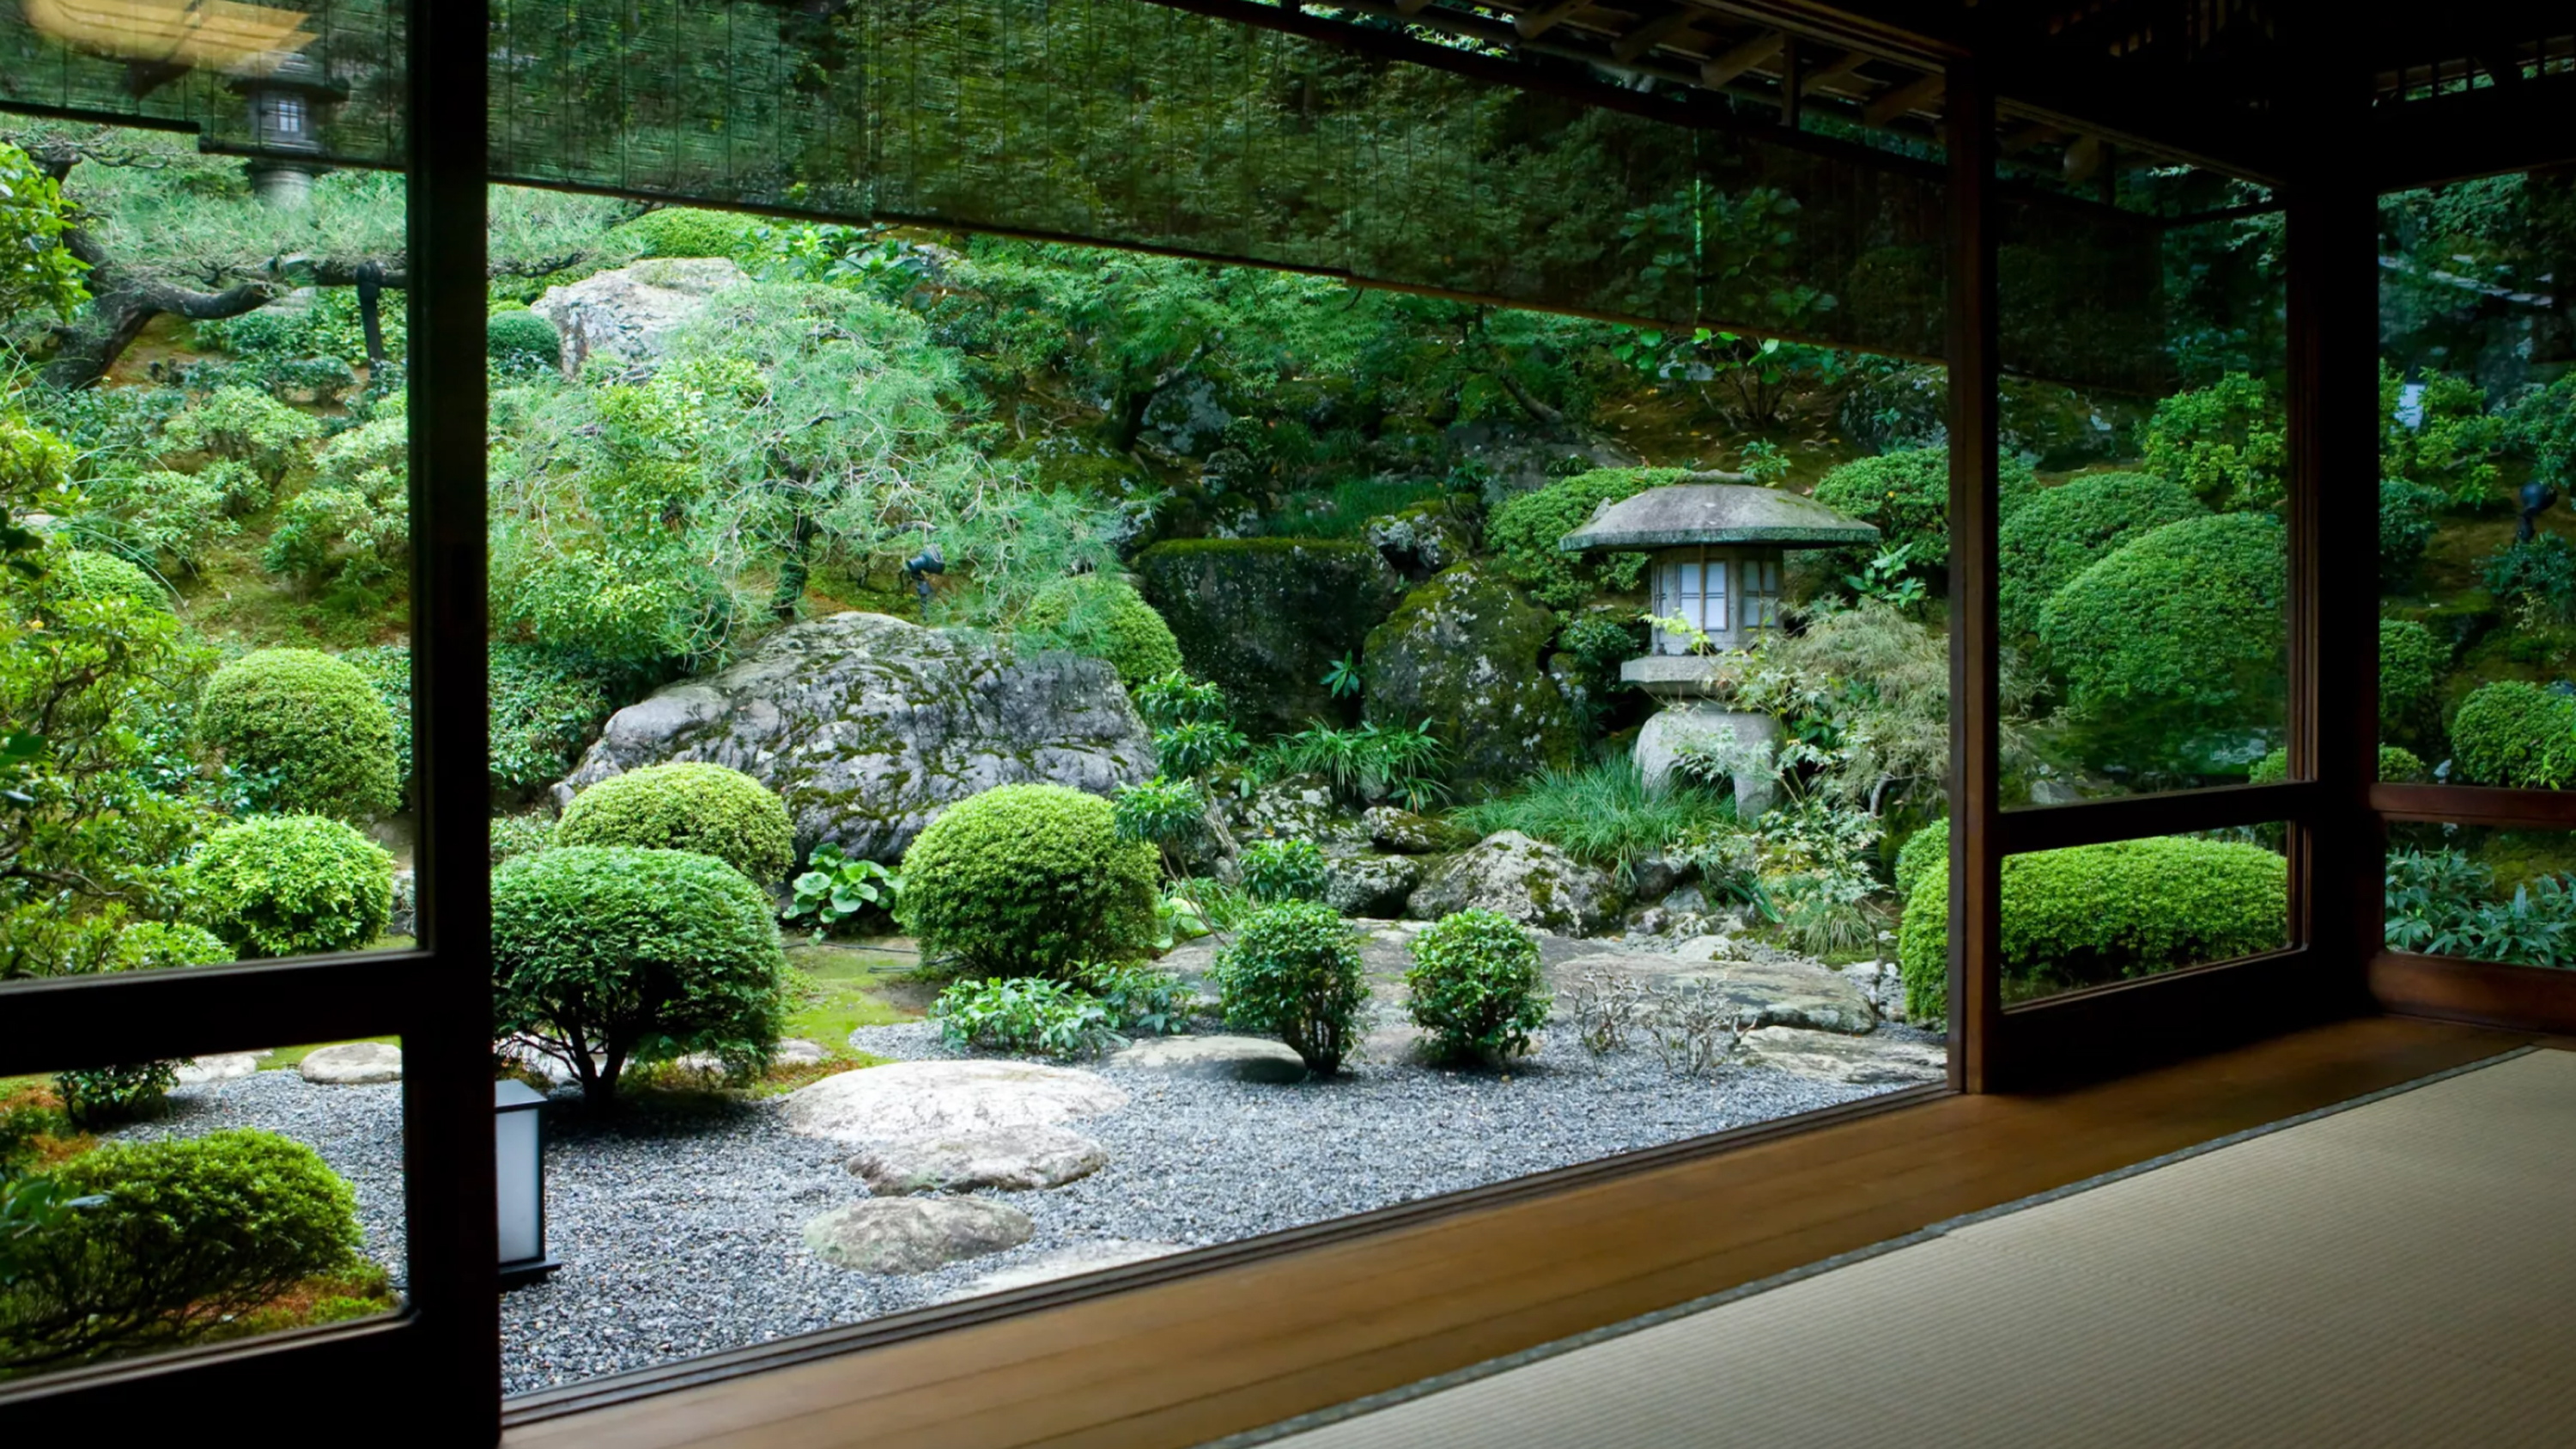 Landscape experts share the secrets to creating an urban Zen garden